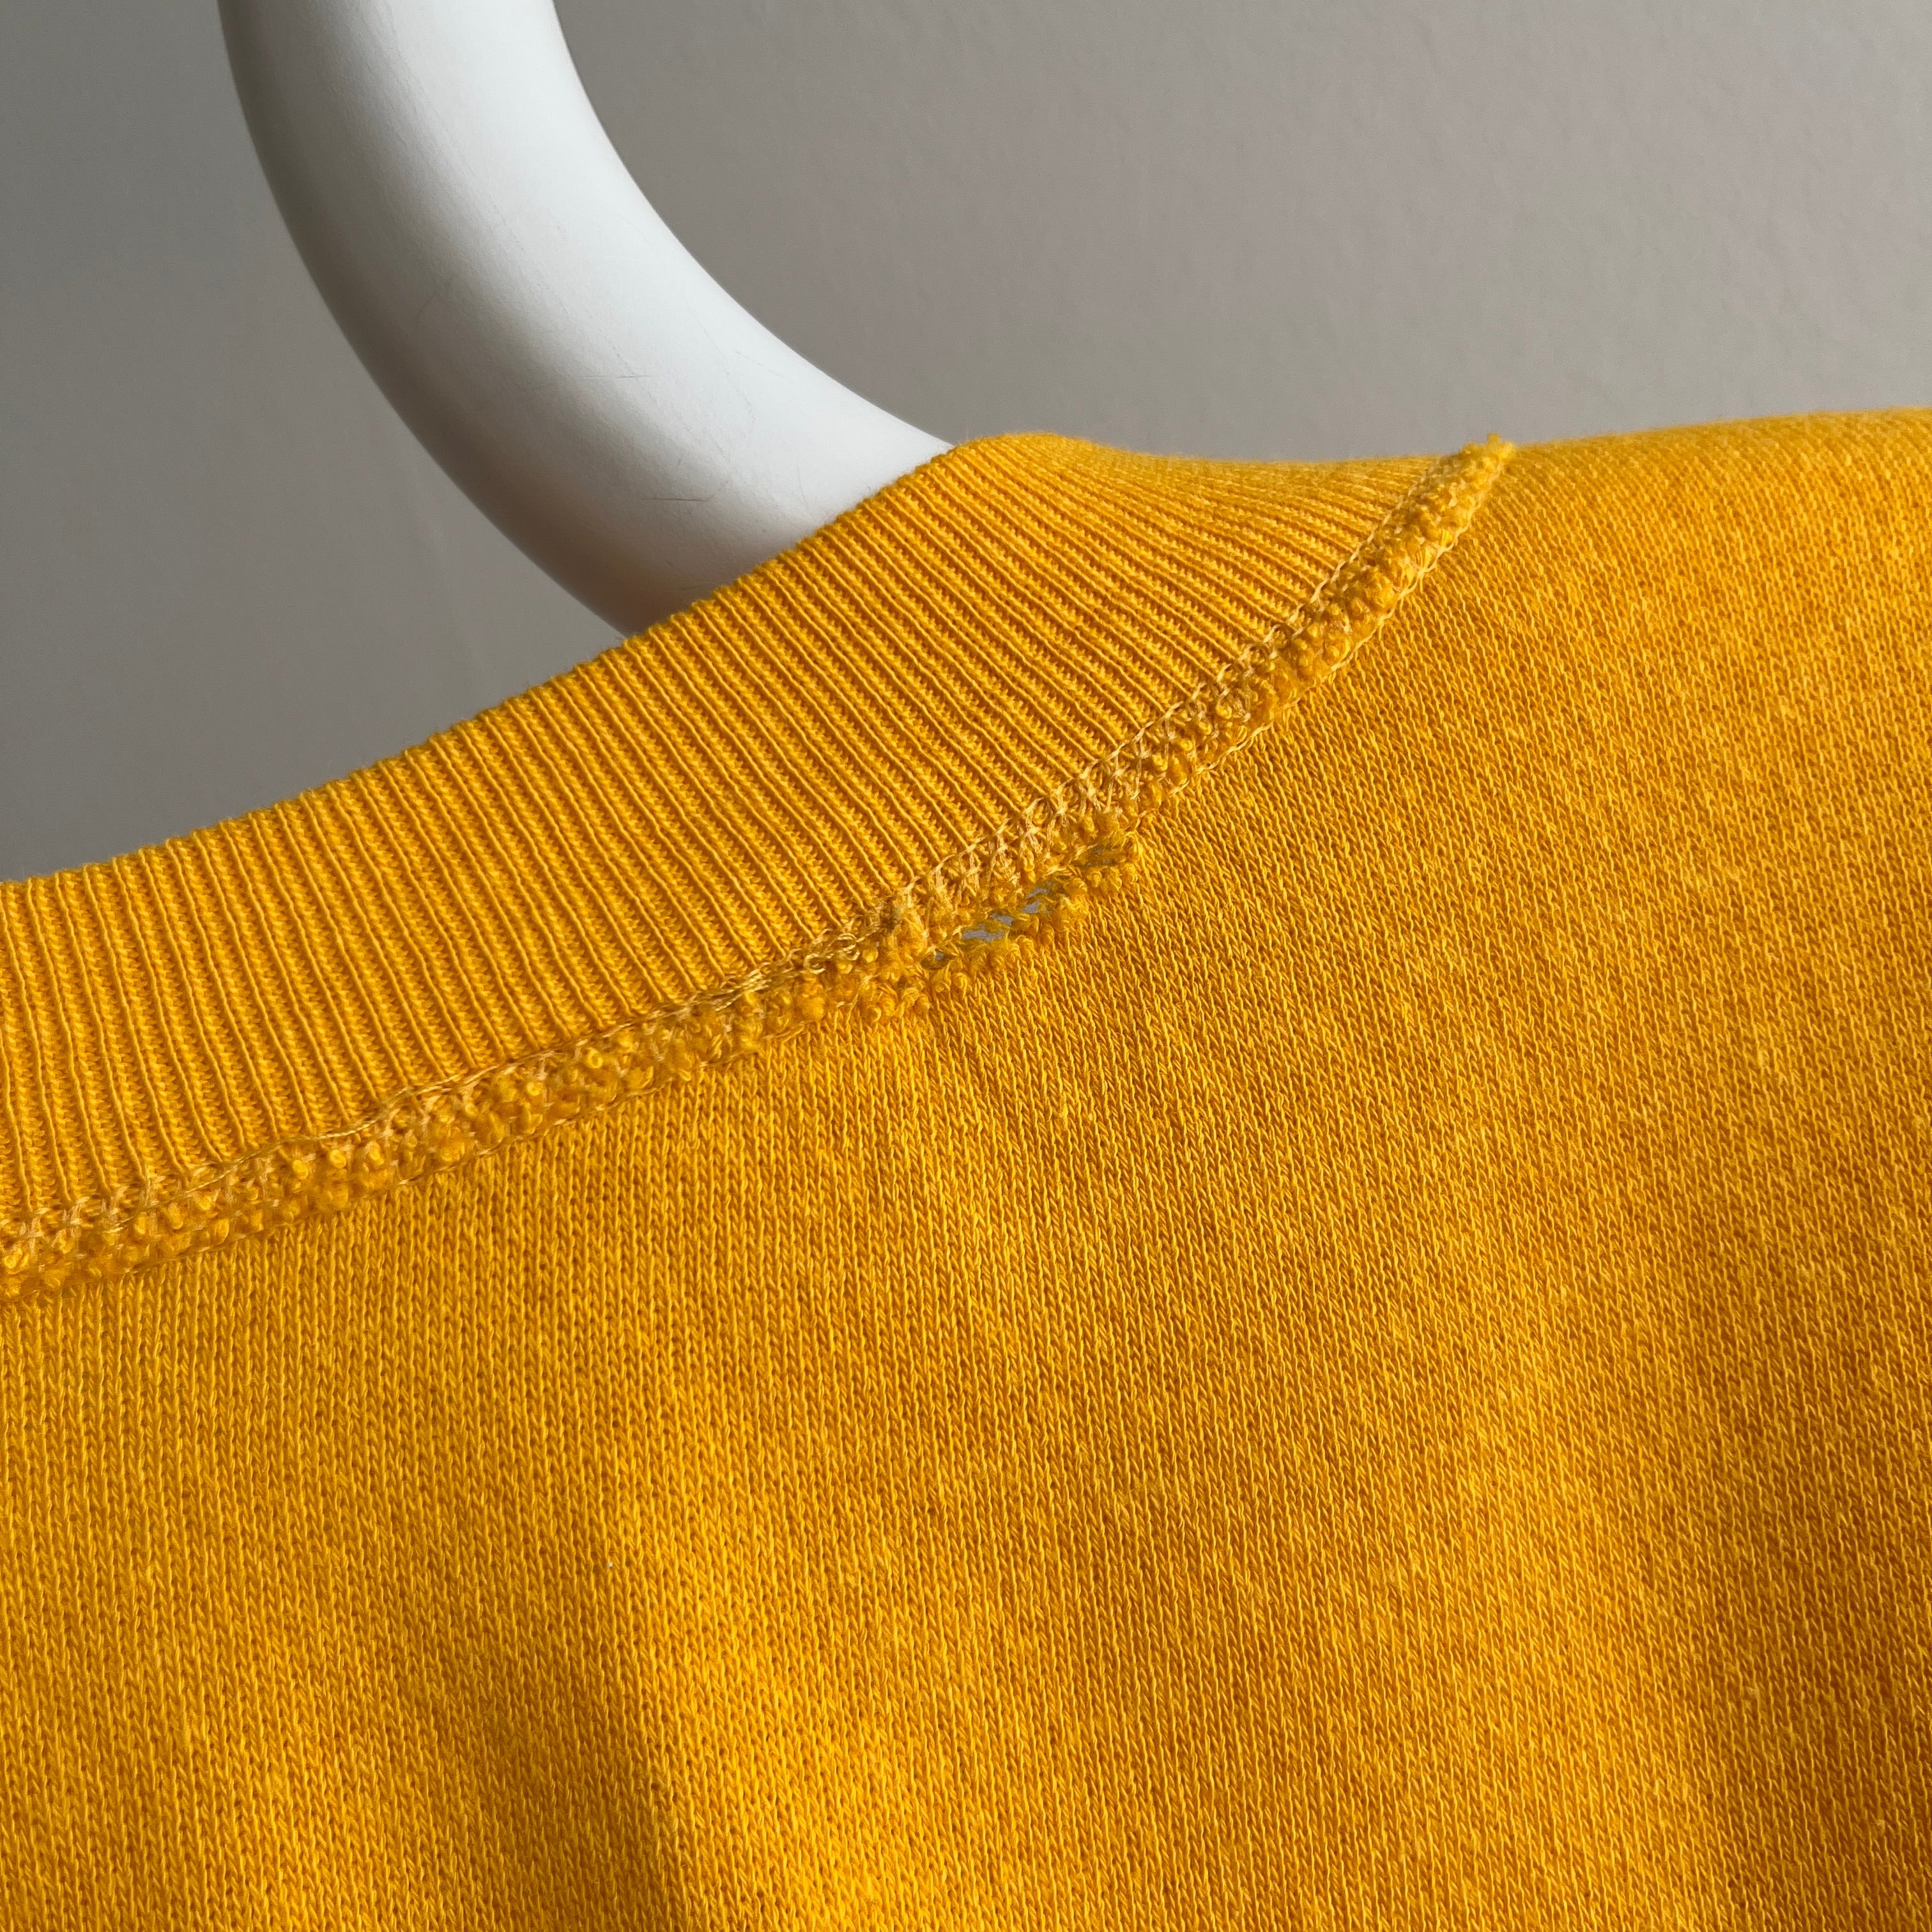 1980s St. John's Bay Henley Sunshine Yellow Sweatshirt